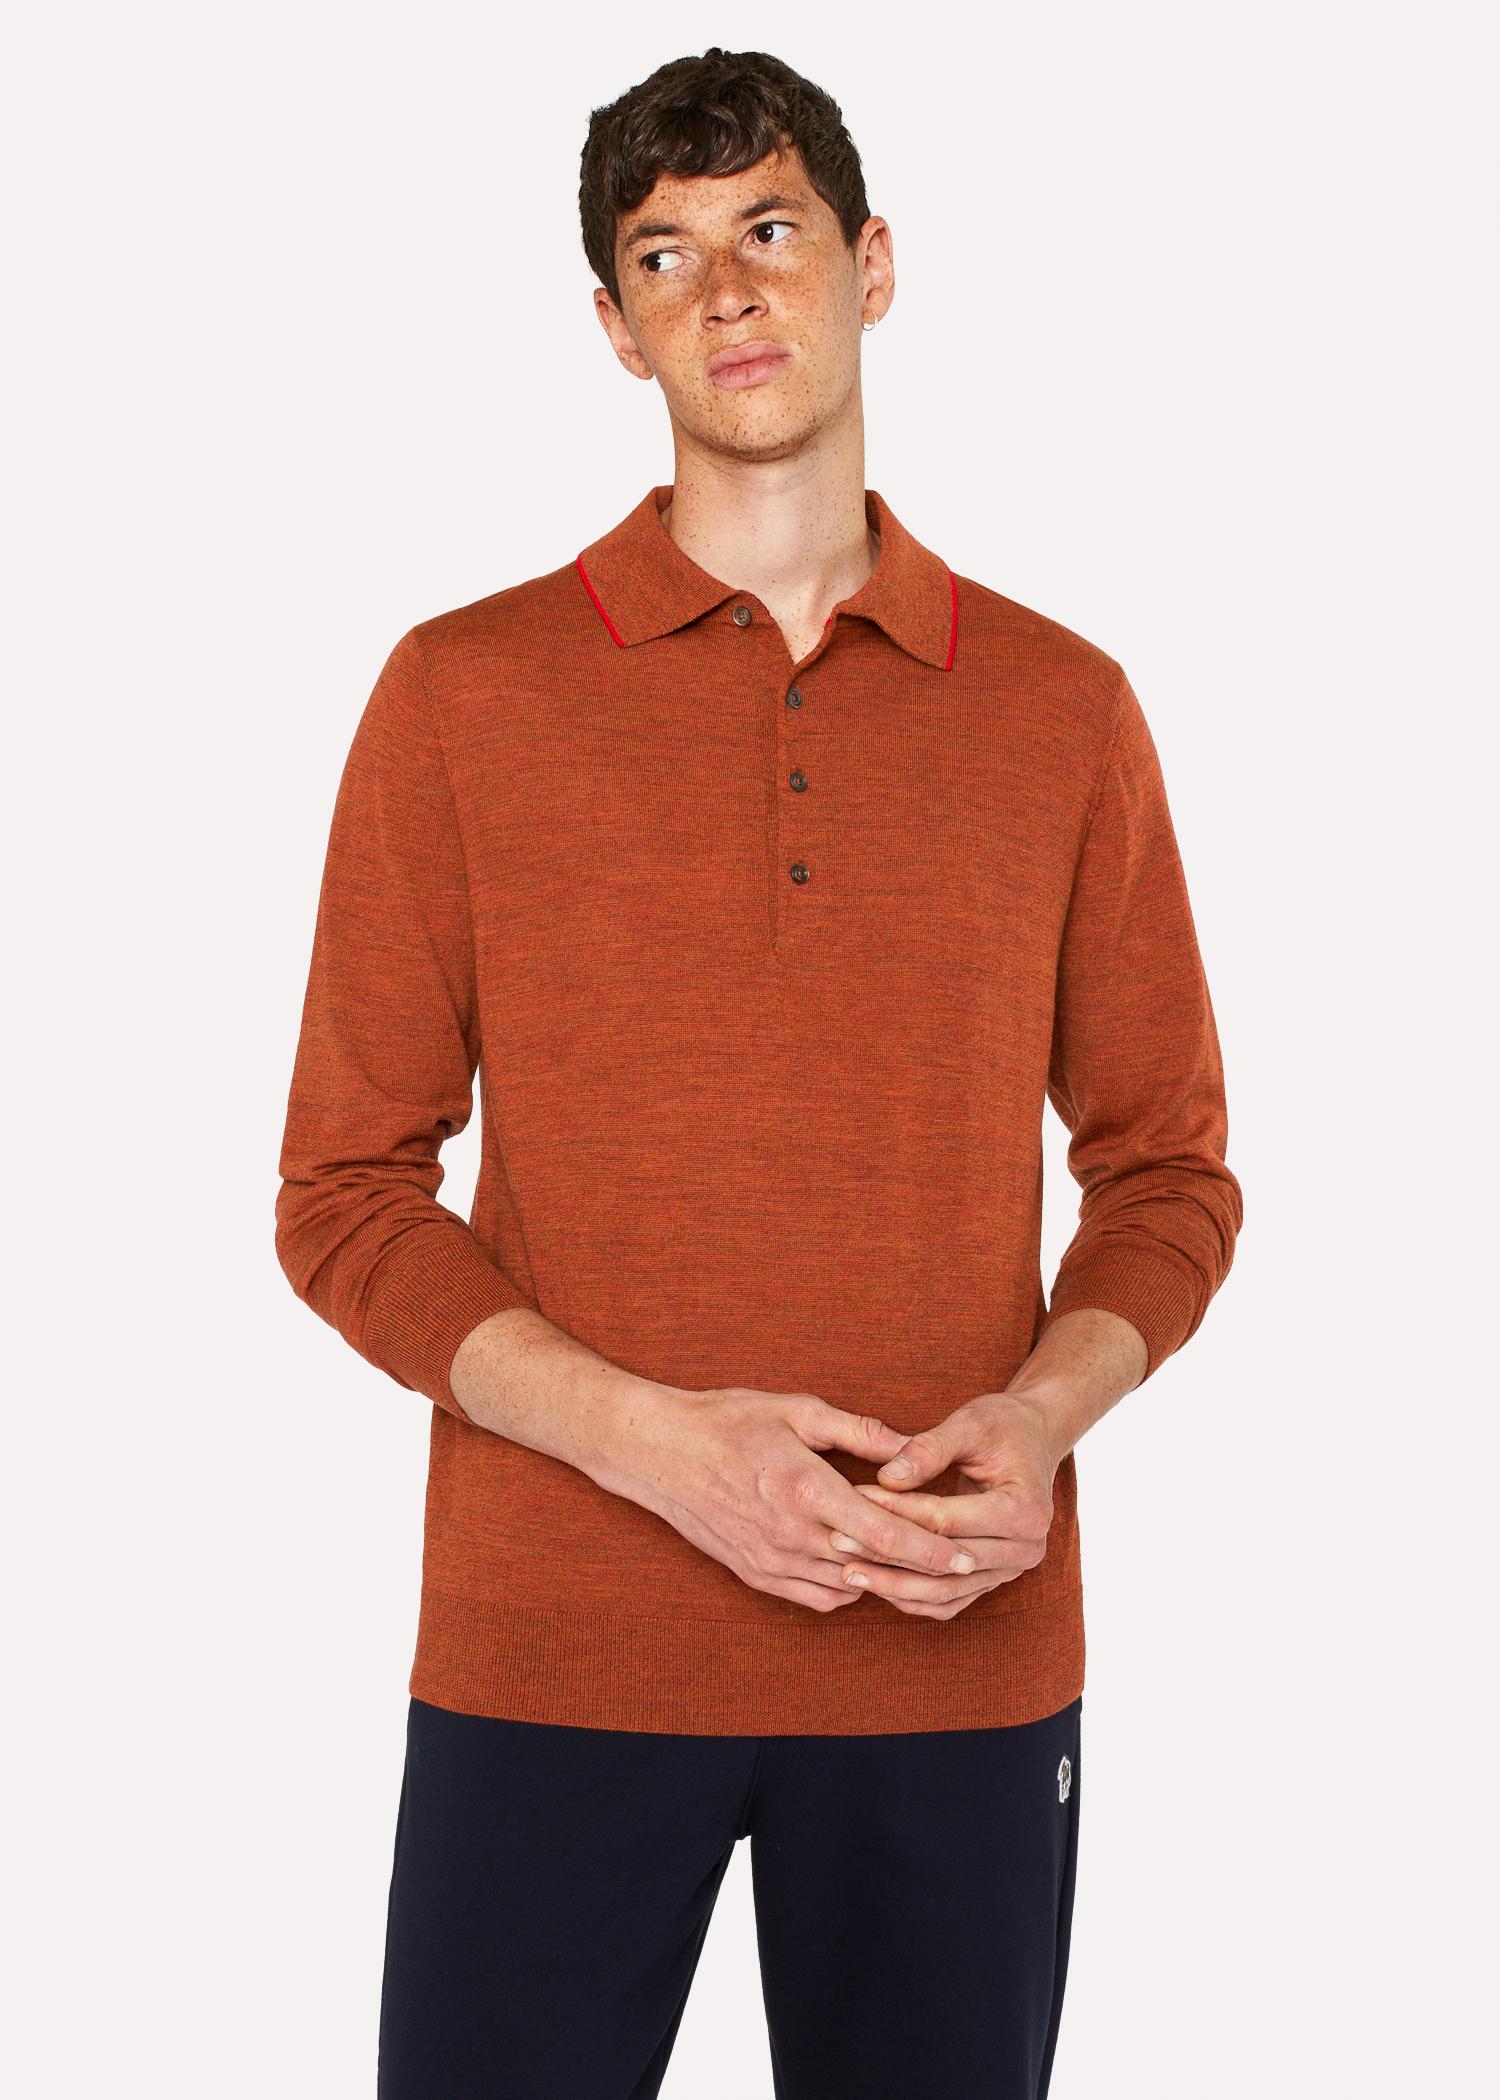 Paul Smith Burnt Orange Merino Wool Long-sleeve Polo Shirt for Men - Lyst